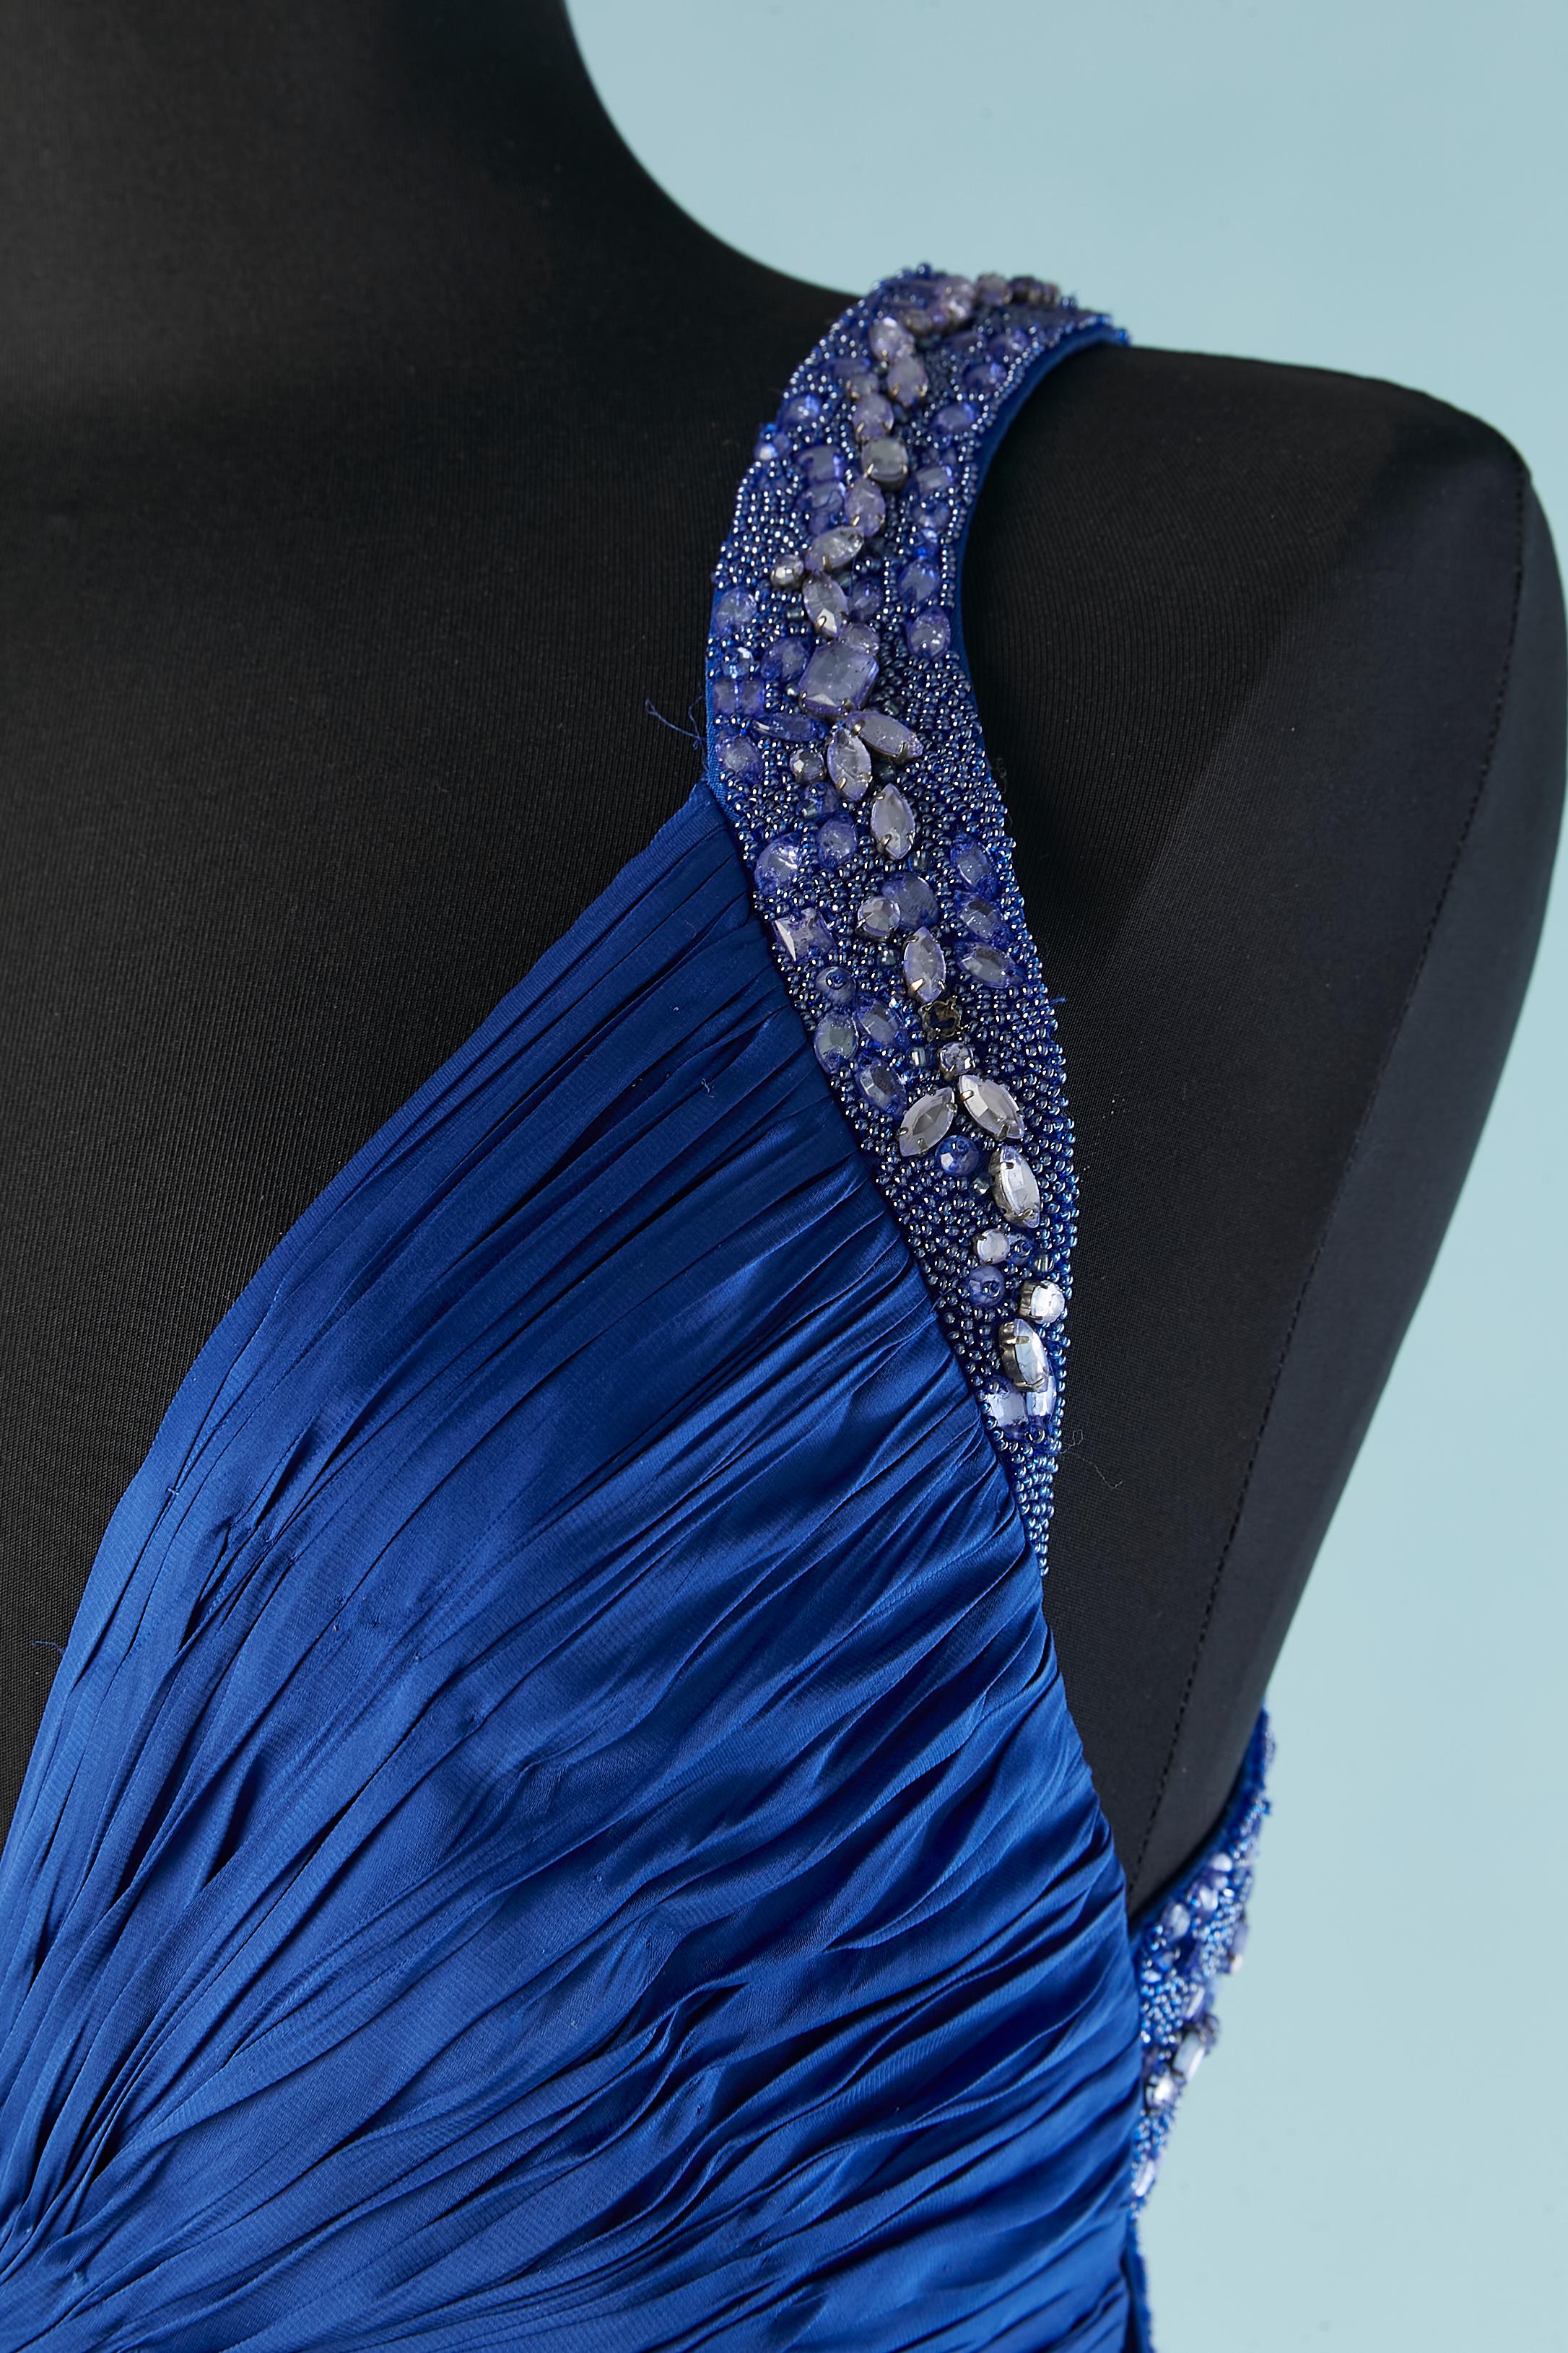 Robe du soir plissée en soie bleue avec effet froissé et perlage.
Plus long dans le dos. Crochets et œillets sur le côté gauche et fermeture à glissière au milieu du dos. Hologramme d'authenticité . Fente au milieu du front (longueur = 70 cm)
Taille